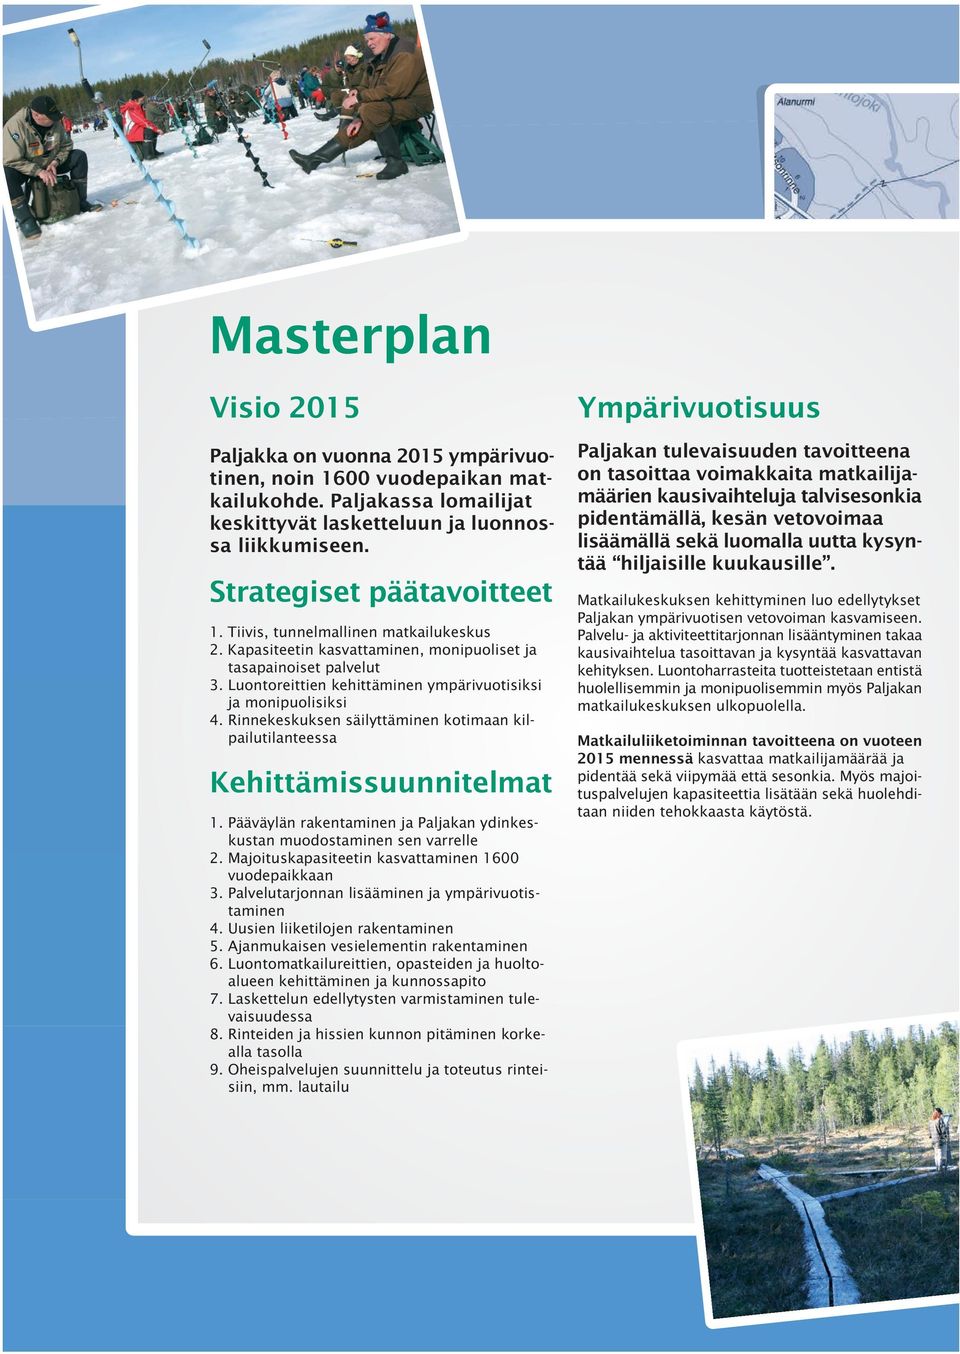 Luontoreittien kehittäminen ympärivuotisiksi ja monipuolisiksi 4. Rinnekeskuksen säilyttäminen kotimaan kilpailutilanteessa Kehittämissuunnitelmat 1.